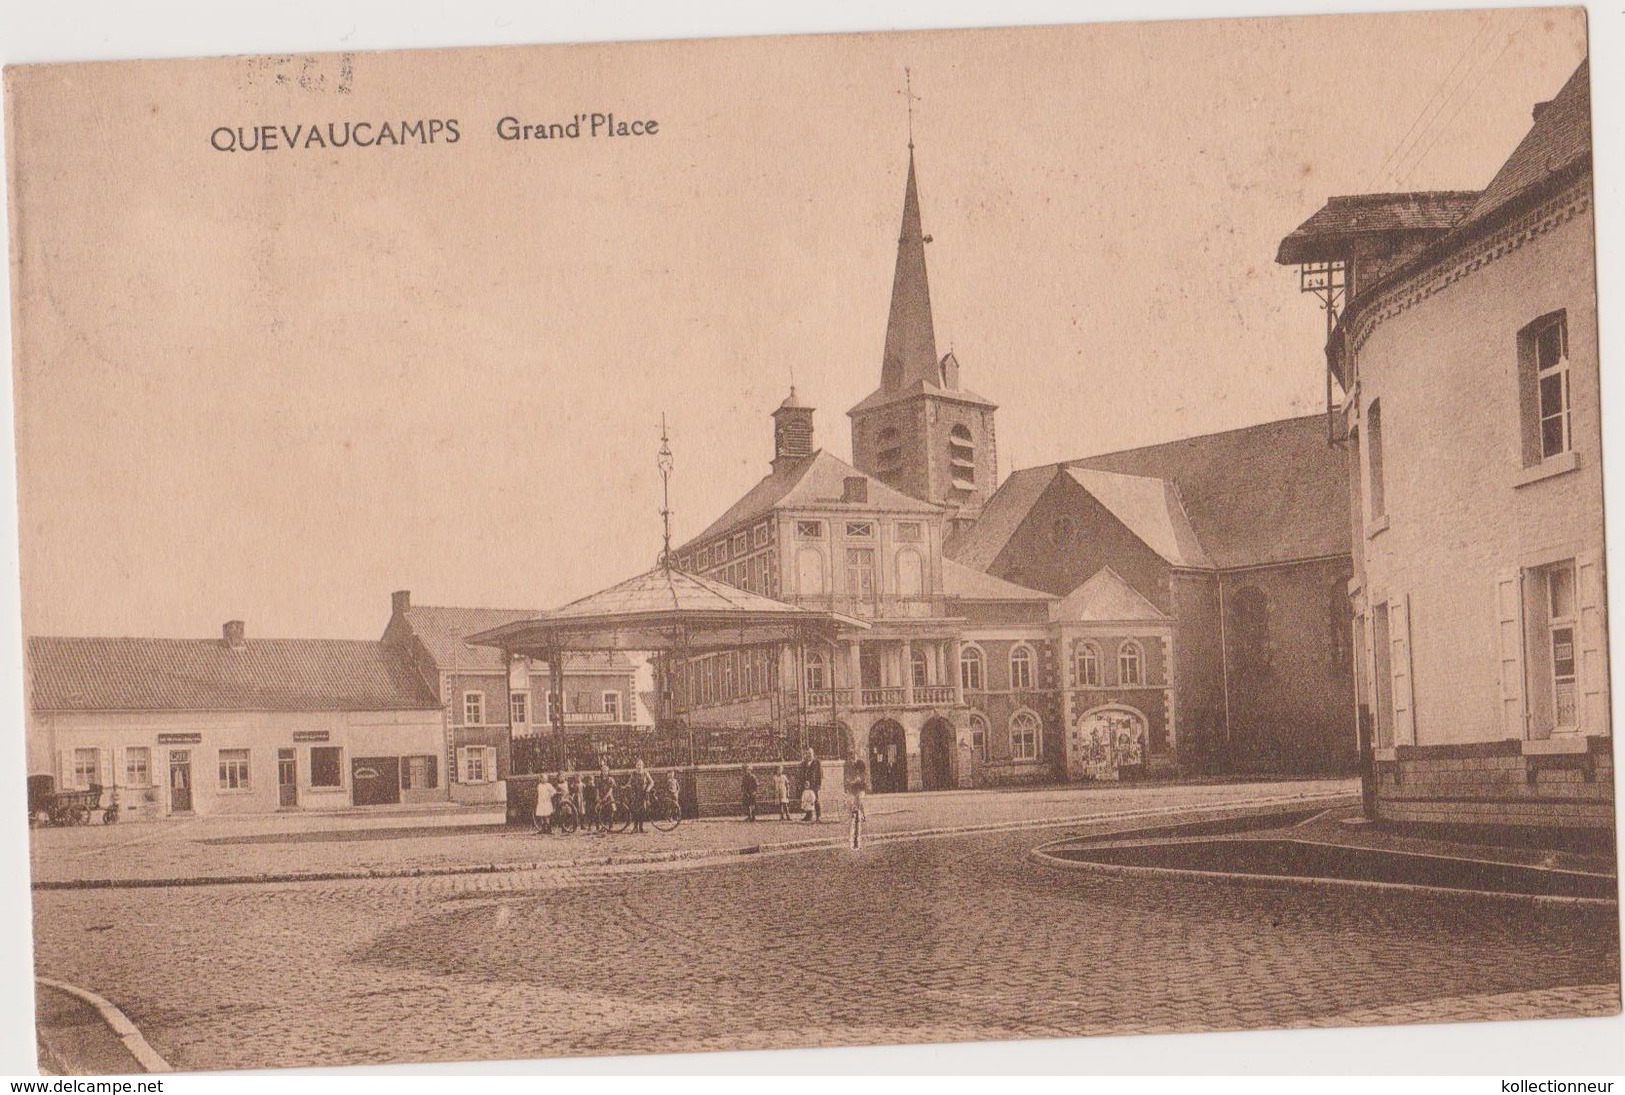 QUEVAUCAMPS - BELOEIL -  GRAND- PLACE -1920 - PUB PARFUMERIE LOCALE - Beloeil